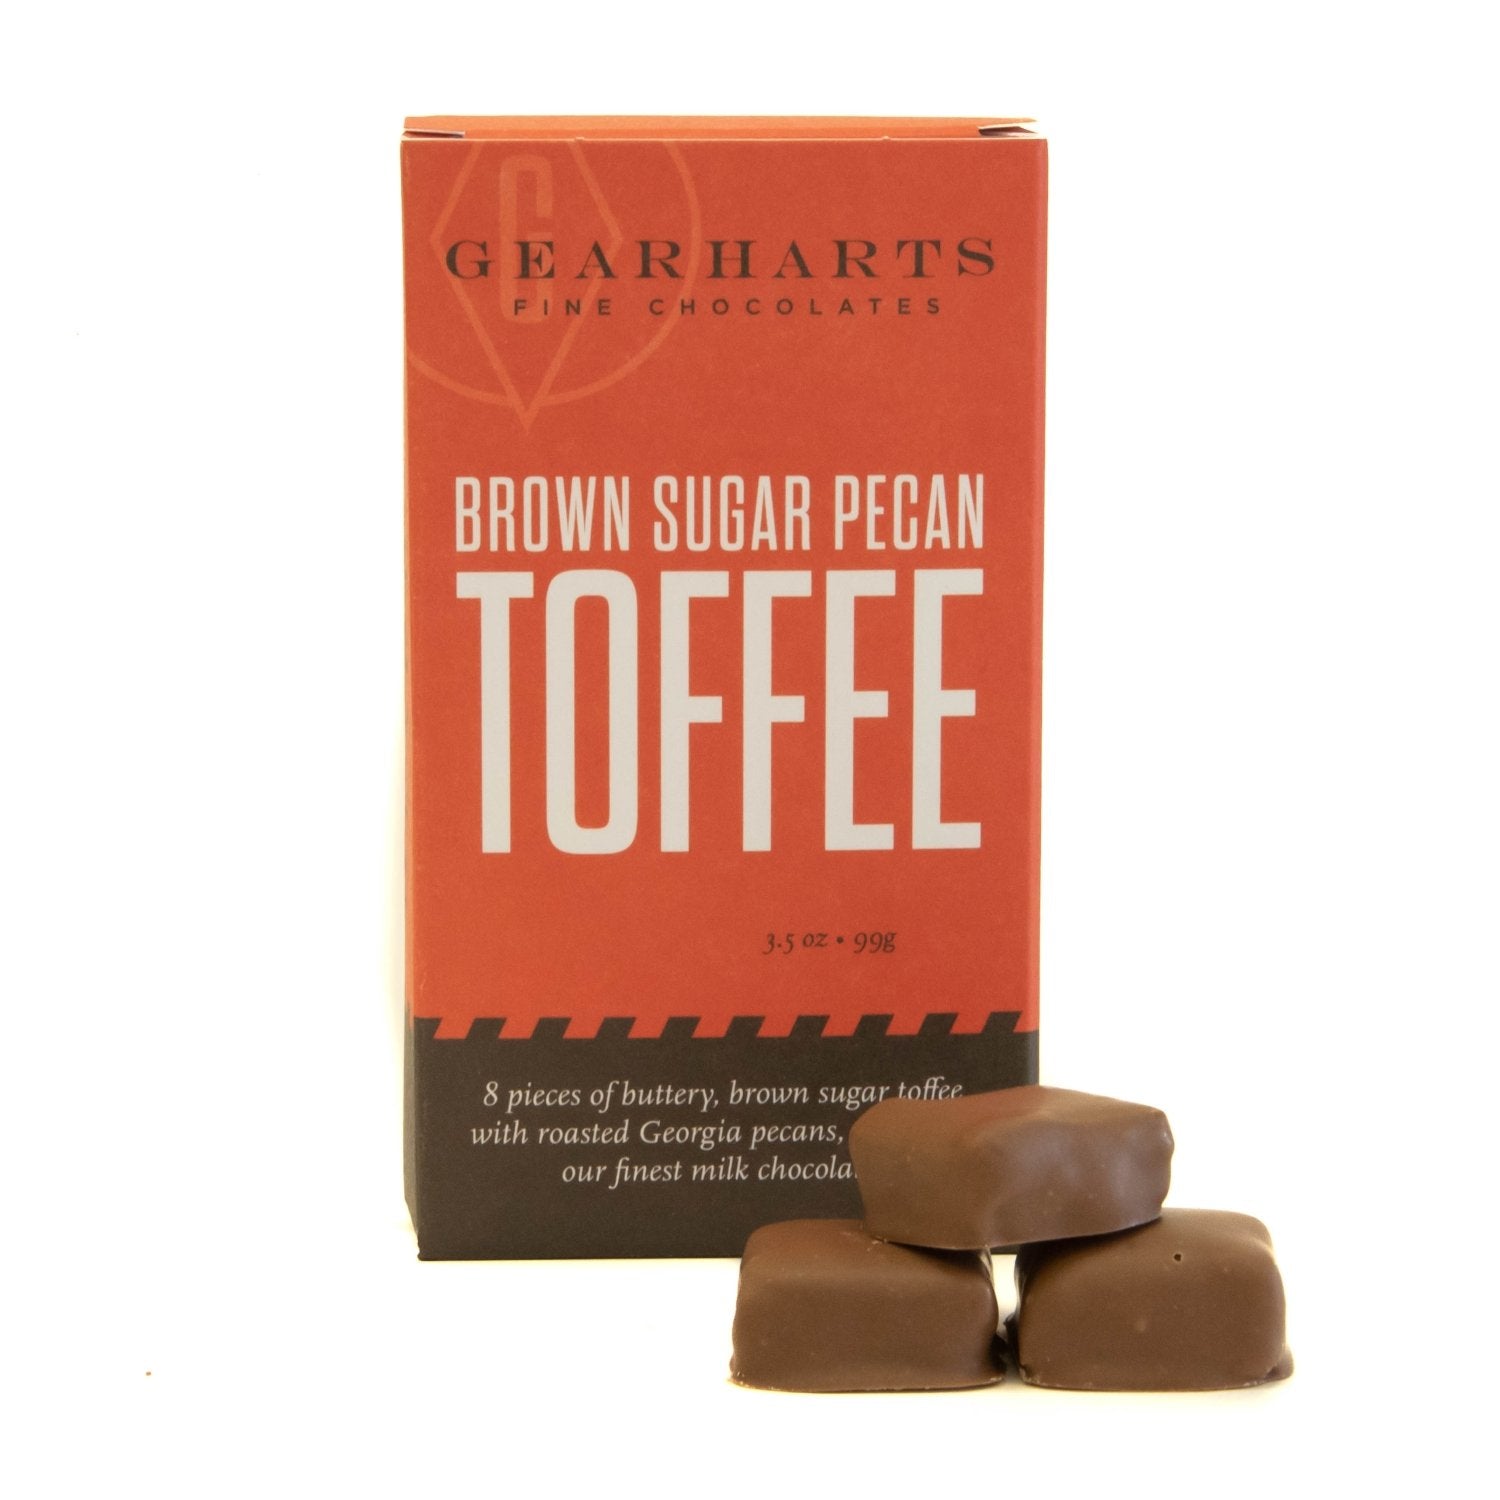 Brown Sugar Pecan Toffee - Gearharts Fine Chocolates